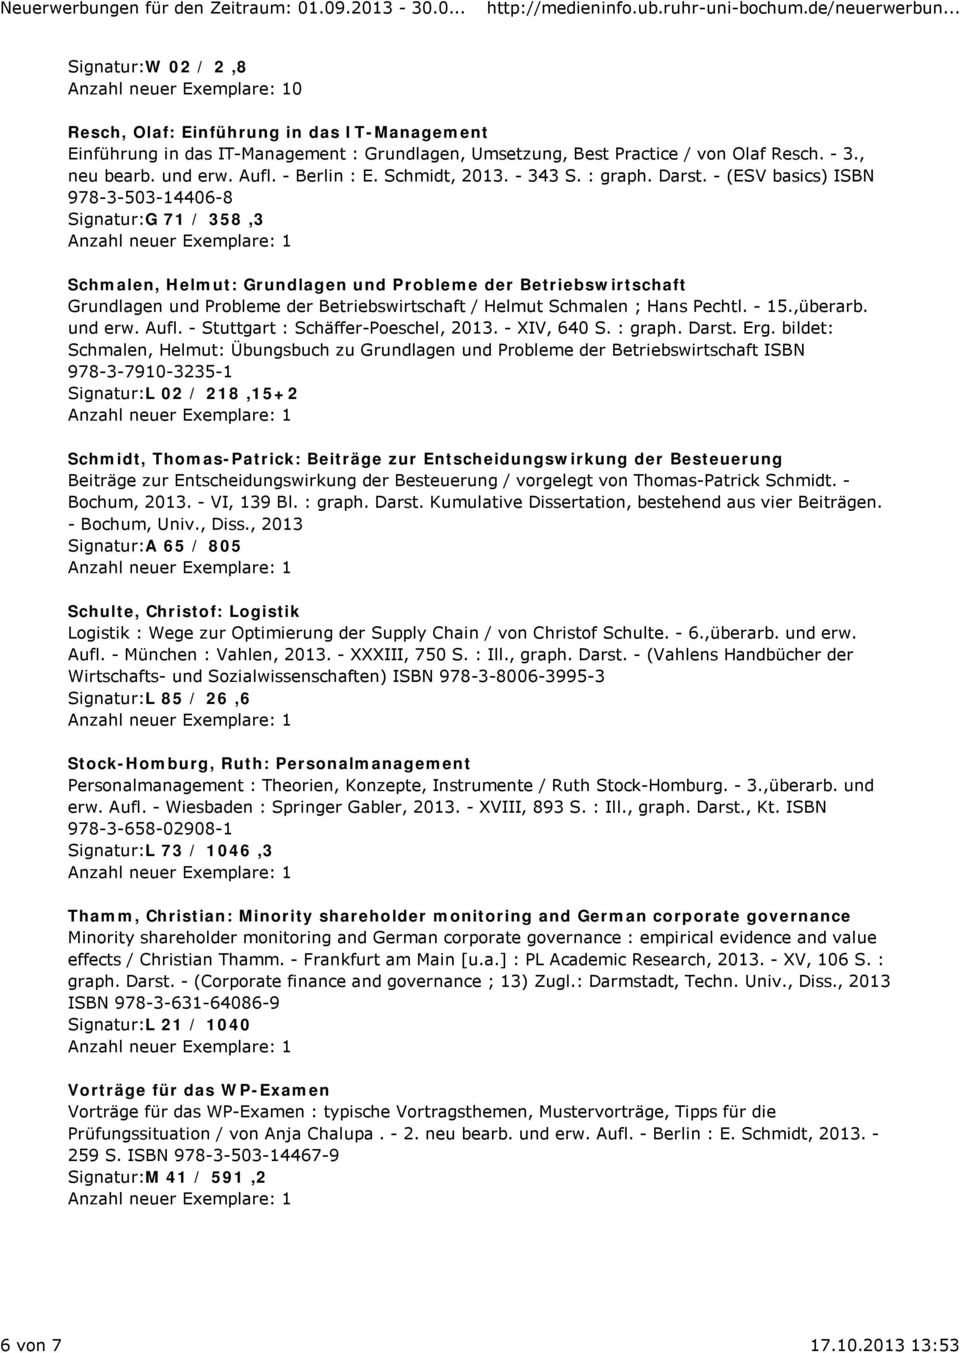 - (ESV basics) ISBN 978-3-503-14406-8 Signatur:G 71 / 358,3 Schmalen, Helmut: Grundlagen und Probleme der Betriebswirtschaft Grundlagen und Probleme der Betriebswirtschaft / Helmut Schmalen ; Hans